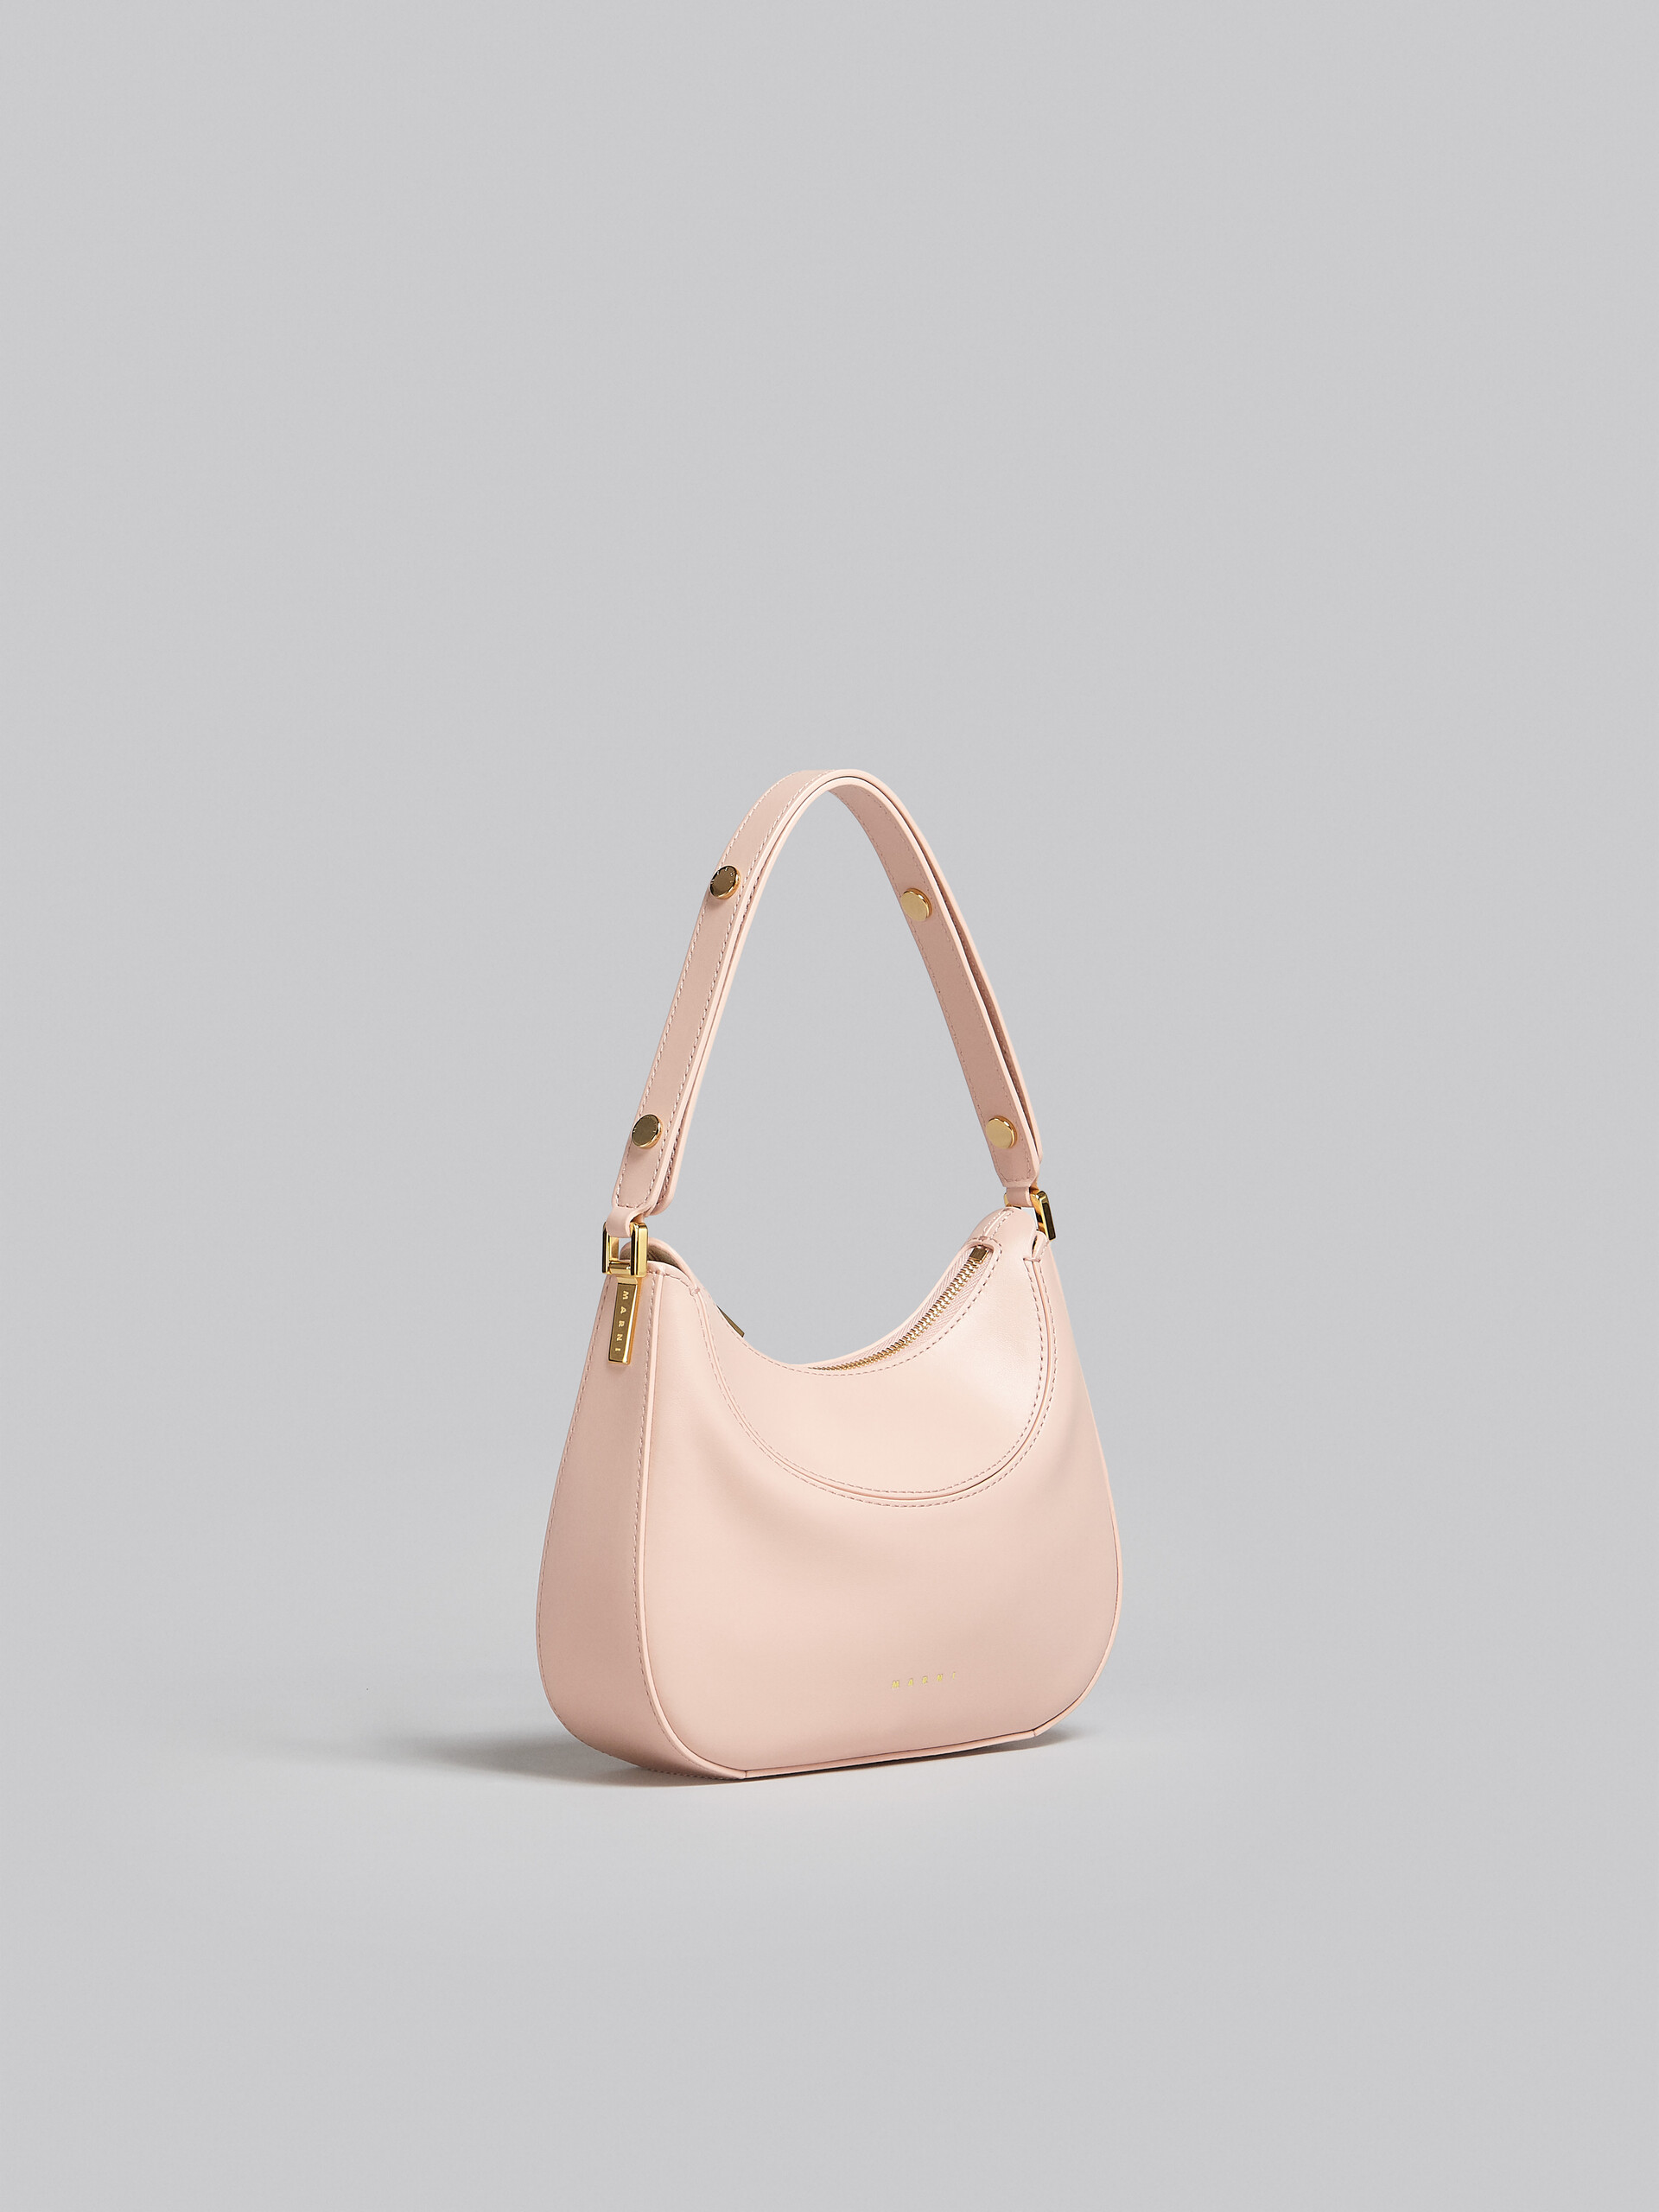 Milano Bag mini in pelle rosa - Borse a mano - Image 5